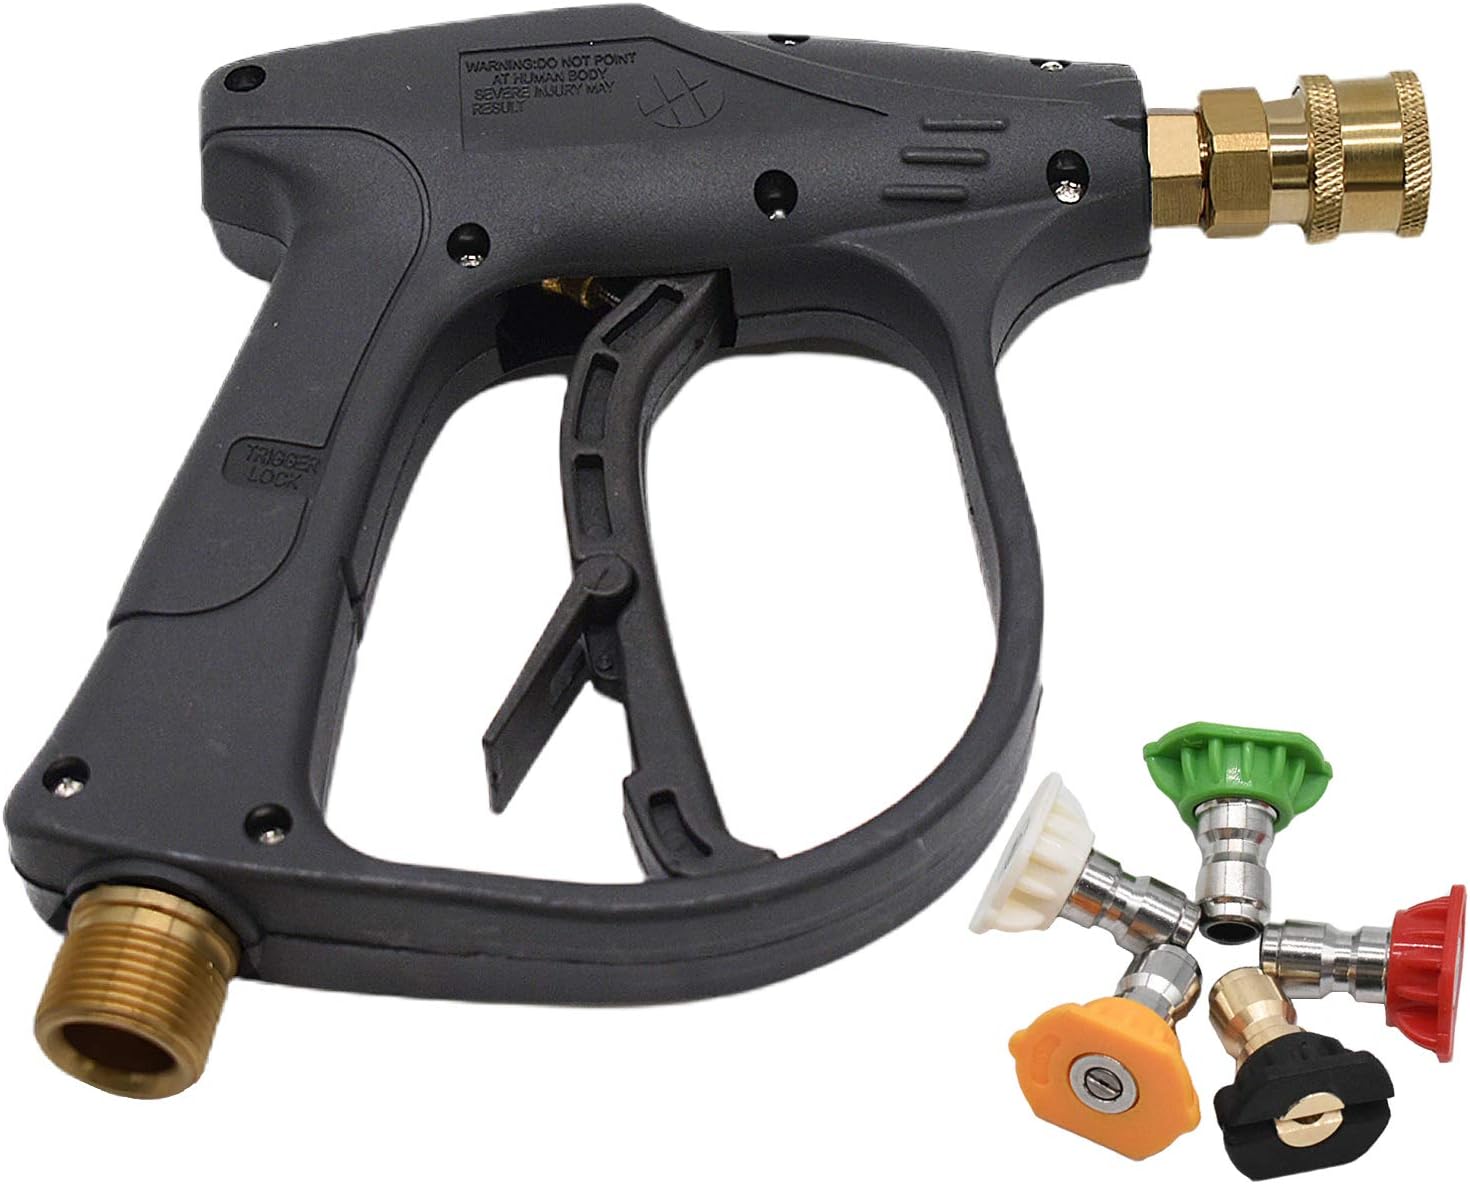 Multipurpose Car Wash Foam Gun for Car Wash Kit M22-14mm and Quick